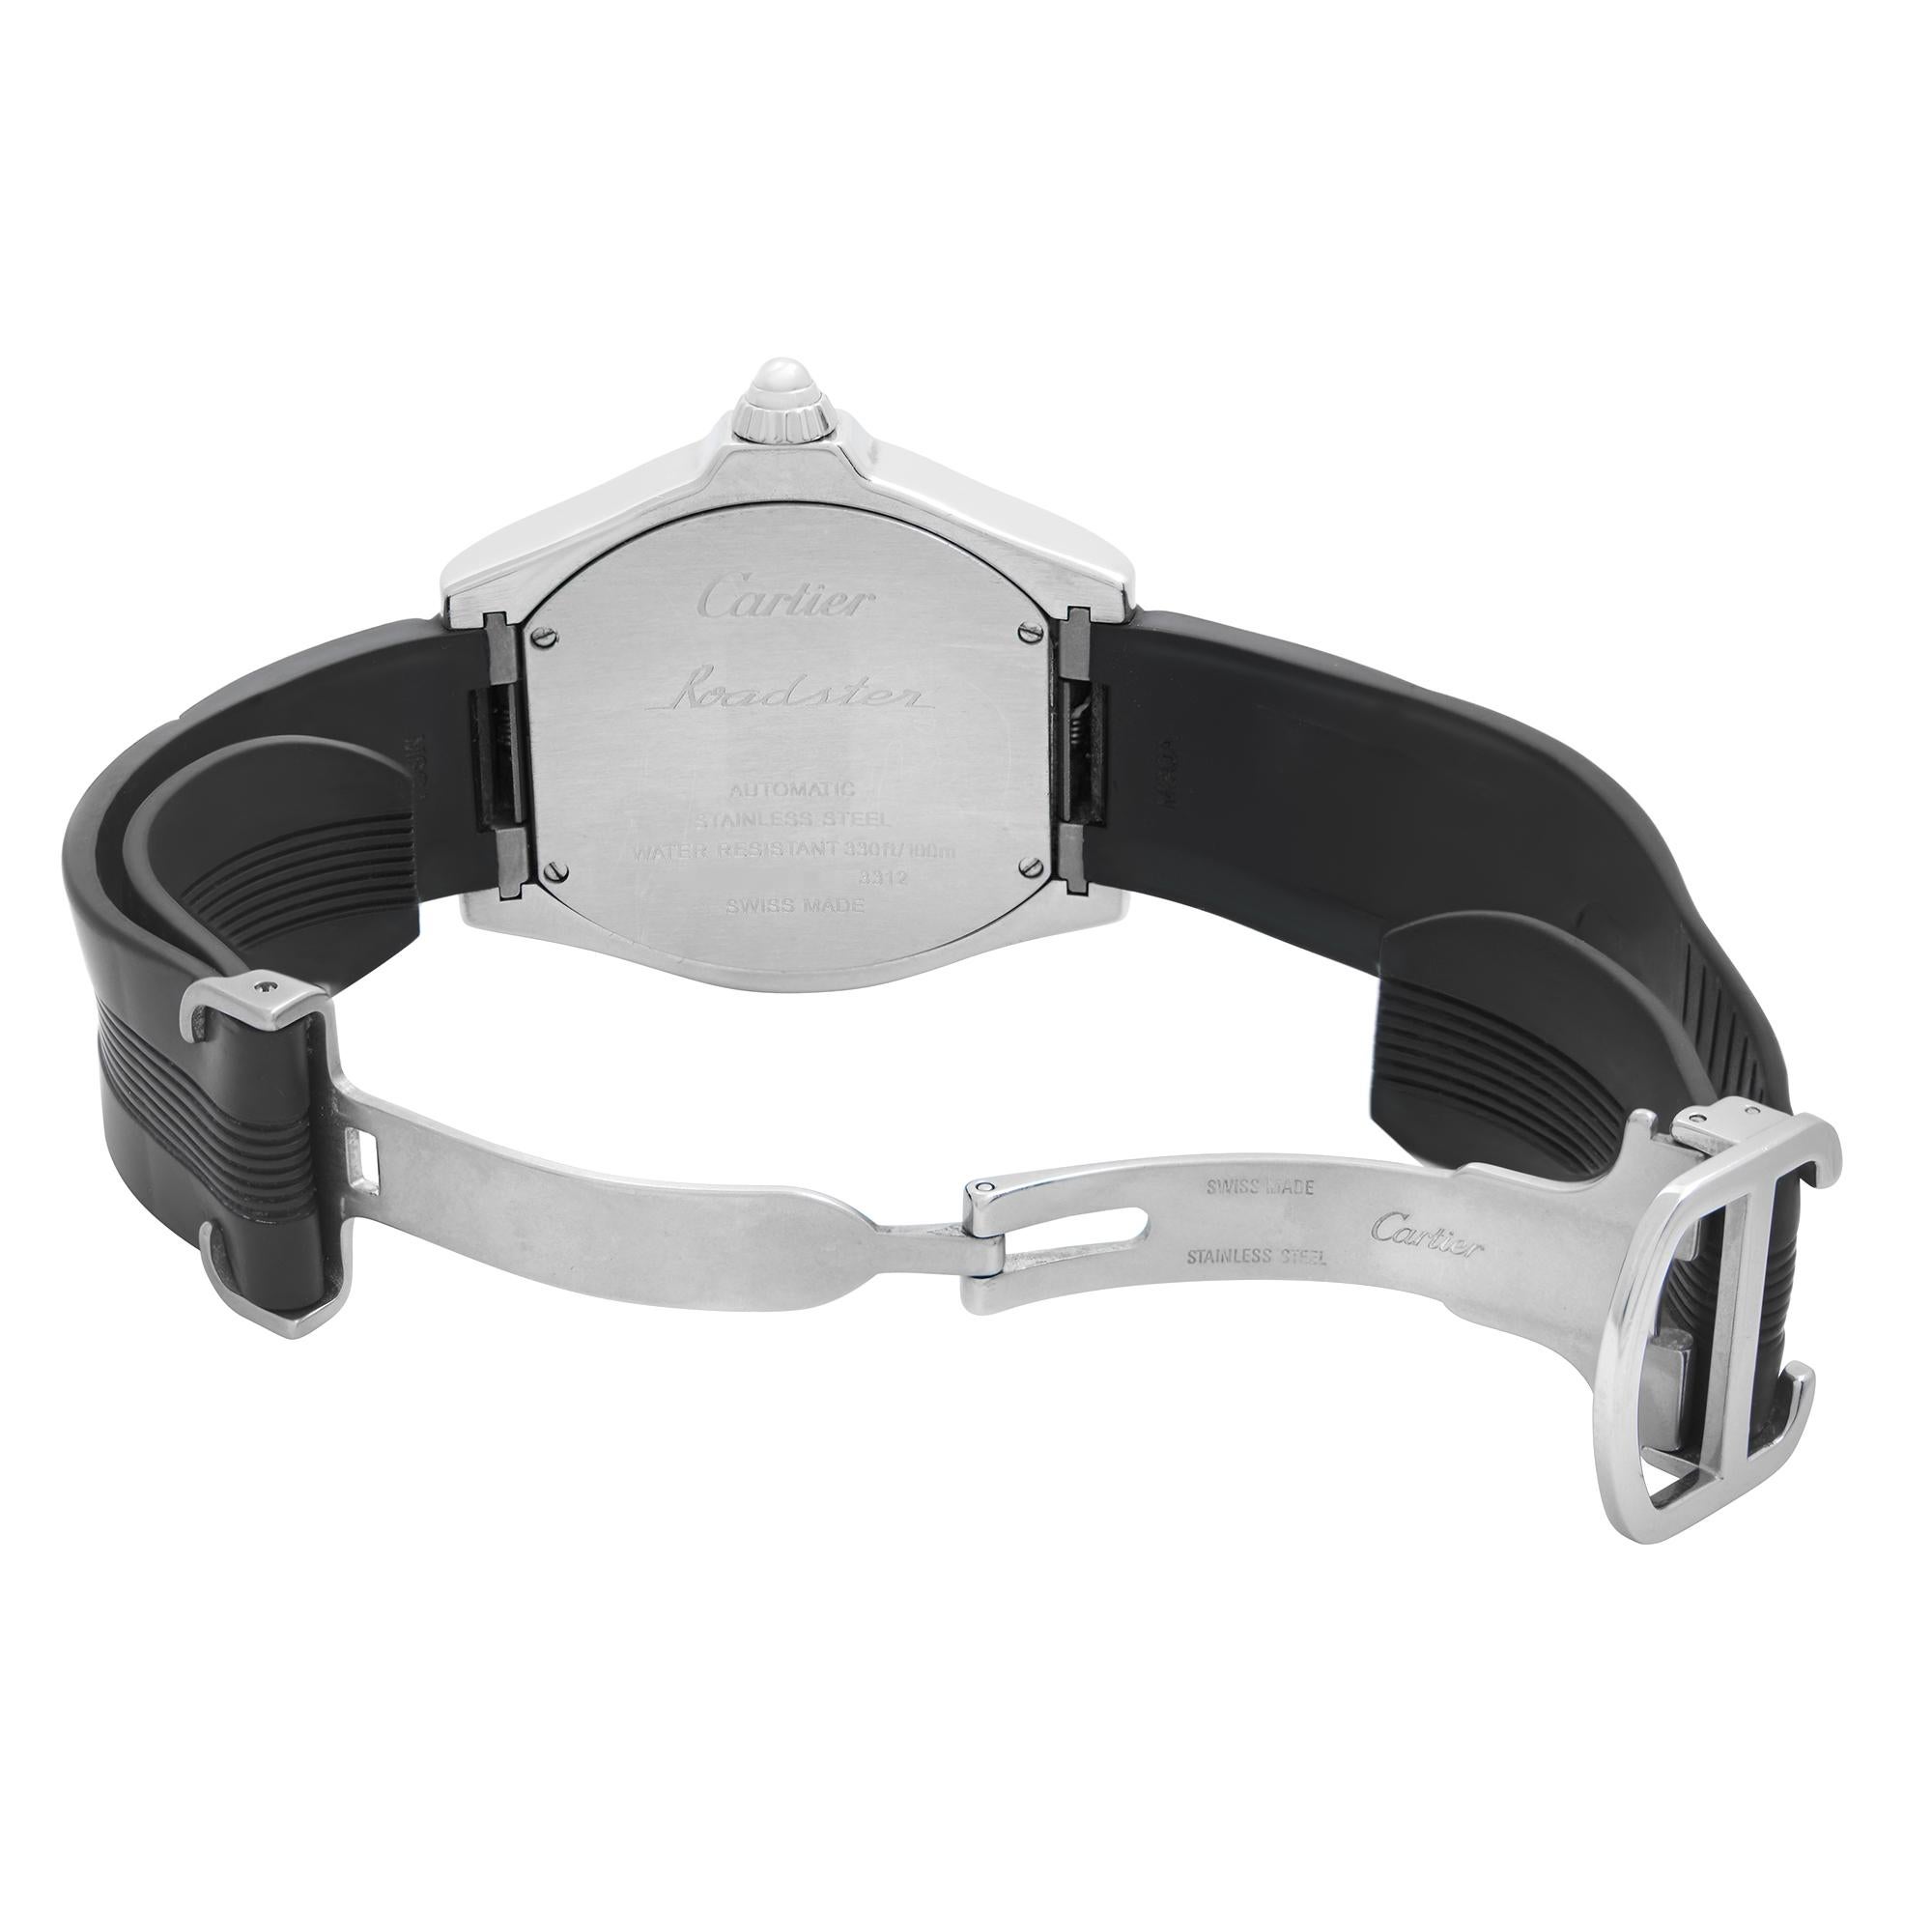 Cartier Roadster Tonneau Steel Silver Dial Automatic Men's Watch W6206018 2